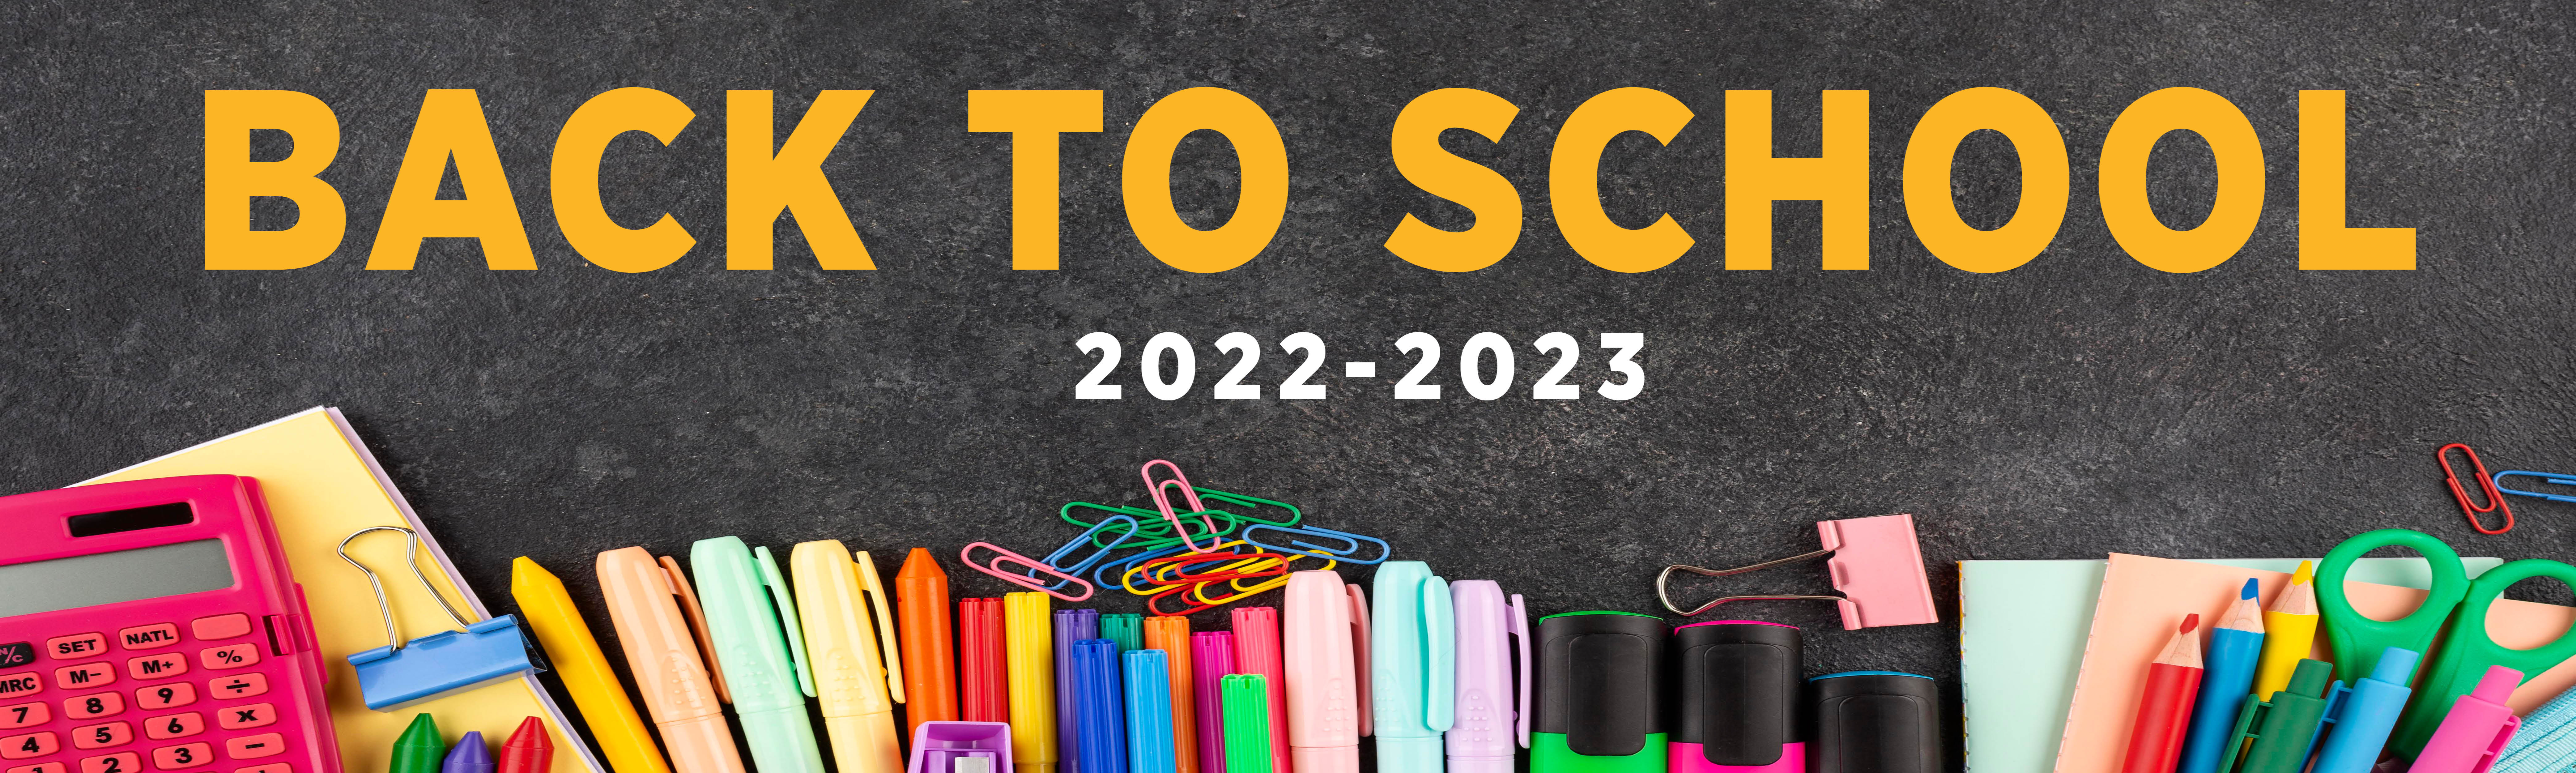 delavan darien logo - back to school 2022-2023